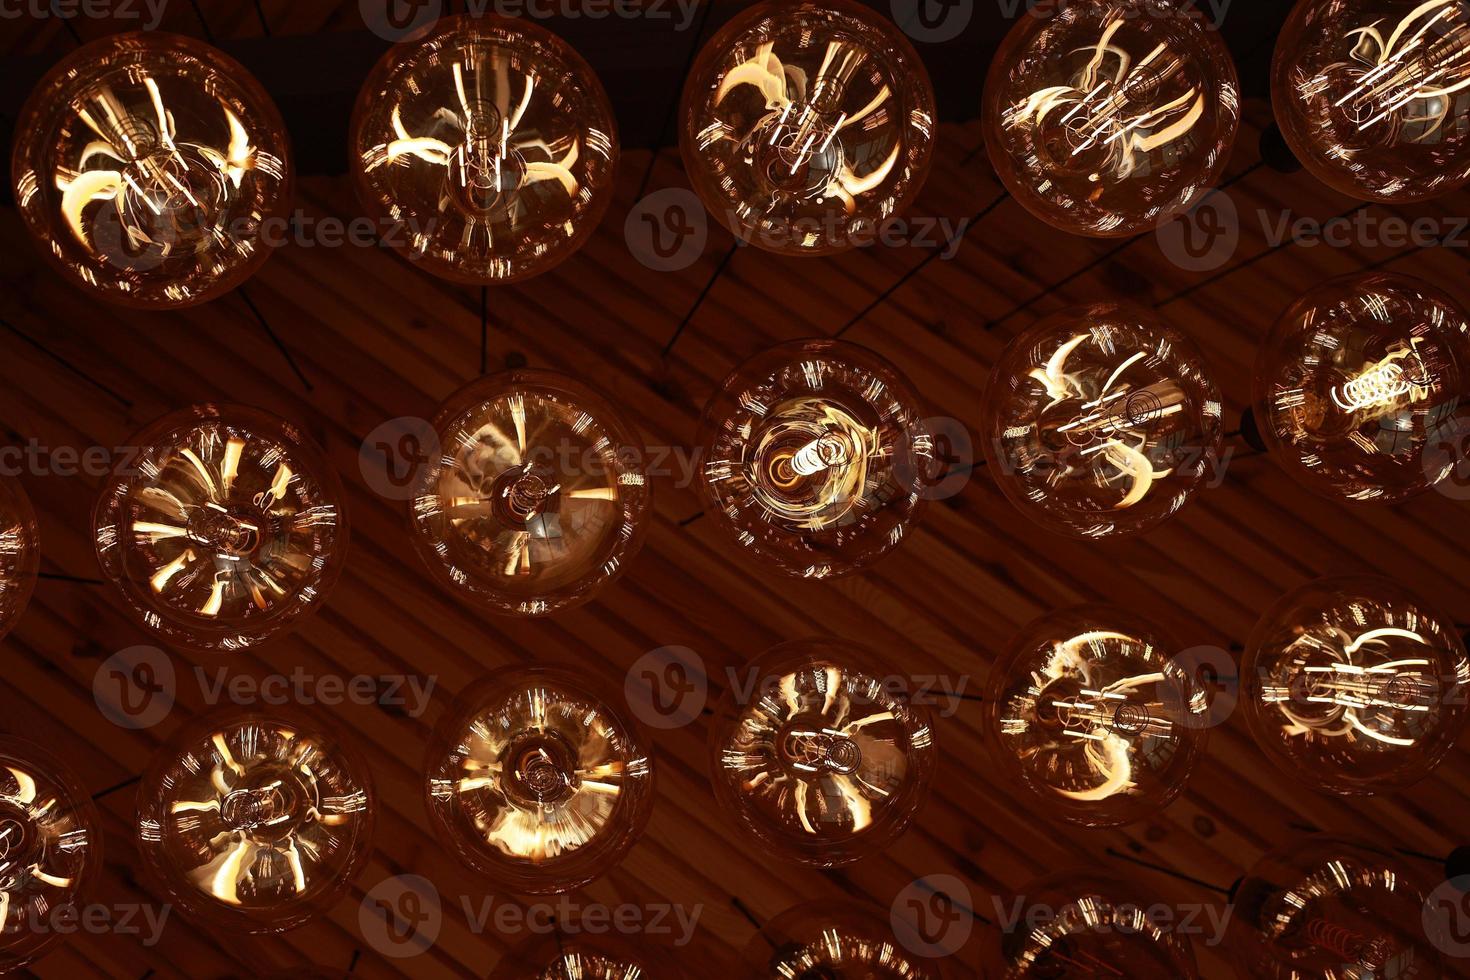 snygg, modern och dekorativ lampor av edison av runda form i de rader. ljus lökar i retro stil. en massa celling lysande årgång led lampor. objekt för interiör dekoration, selektiv fokus Foto